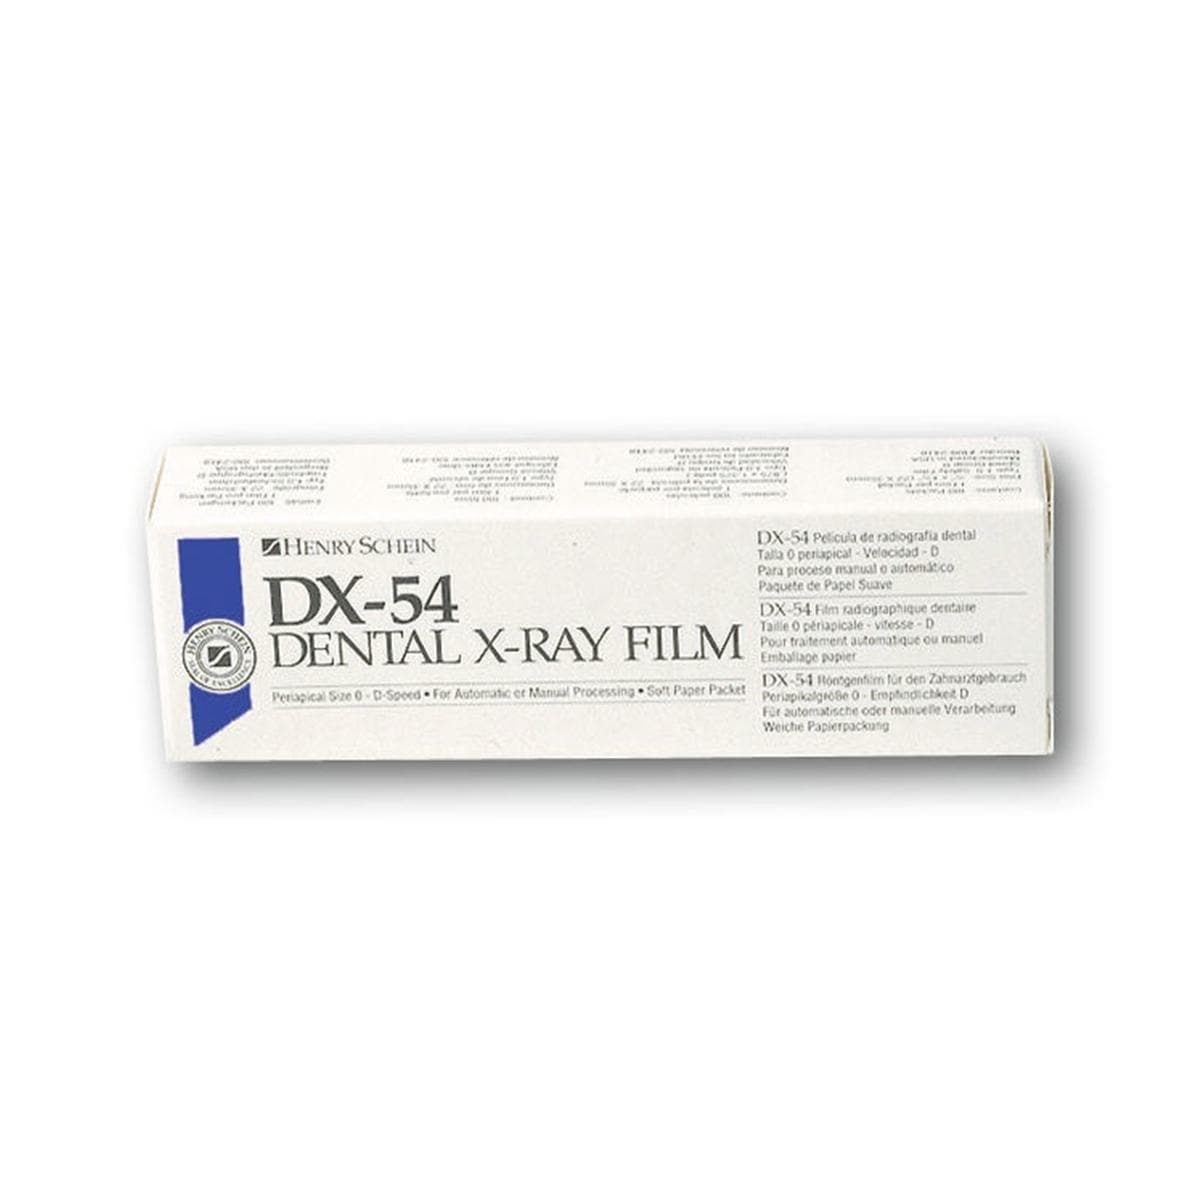 Dental X-ray Film D 2 x 3, DX 54 - D-speed, 100 pcs, 22 x 35 mm, DX54, simple, flexi-soft, vinyl